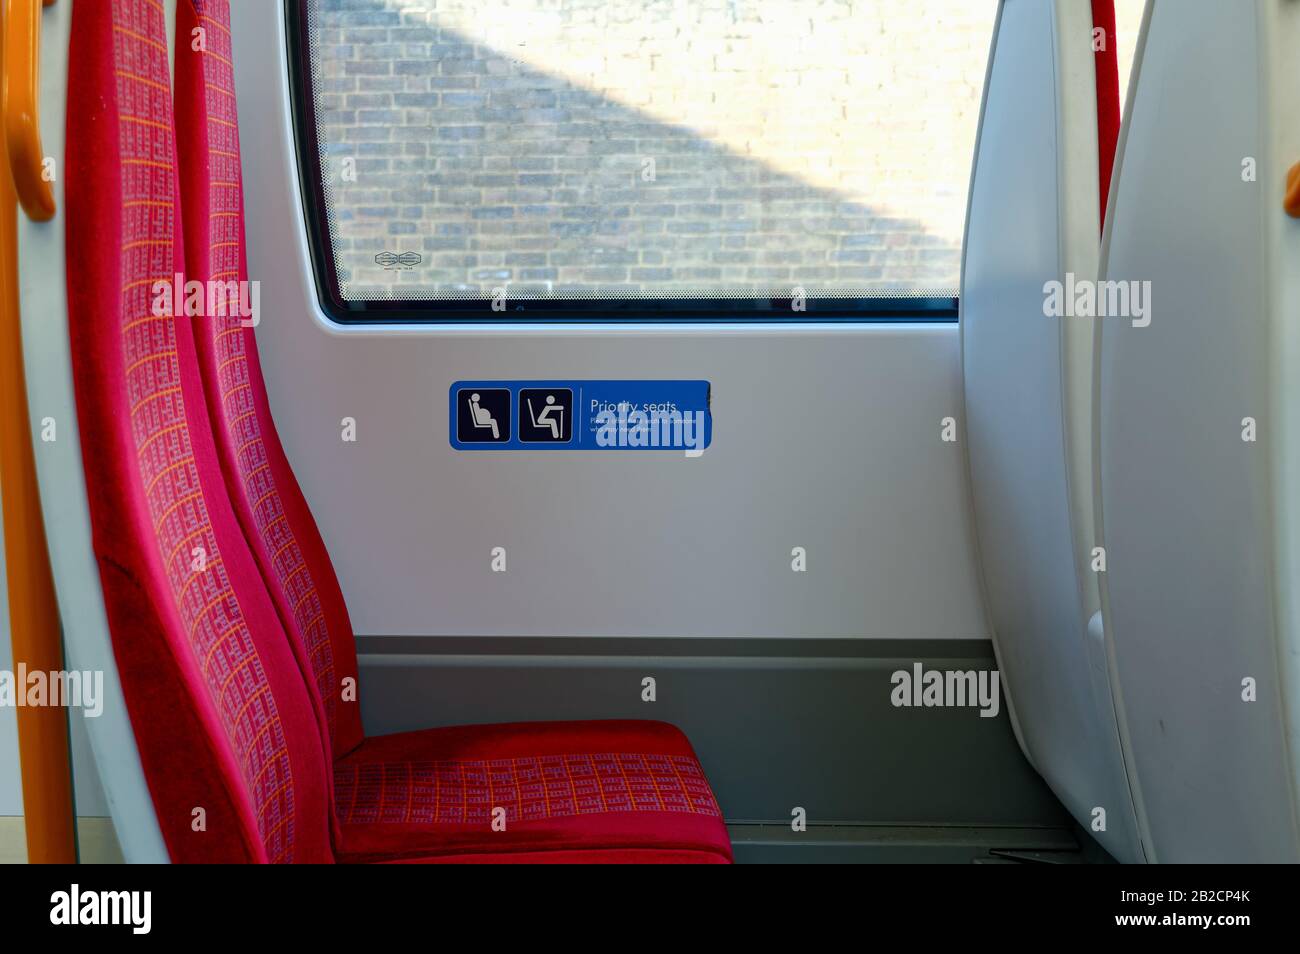 Gros plan d'un siège de train vide avec un panneau indiquant « sièges prioritaires pour les personnes âgées et toute personne qui pourrait en avoir besoin », Londres Angleterre Royaume-Uni Banque D'Images